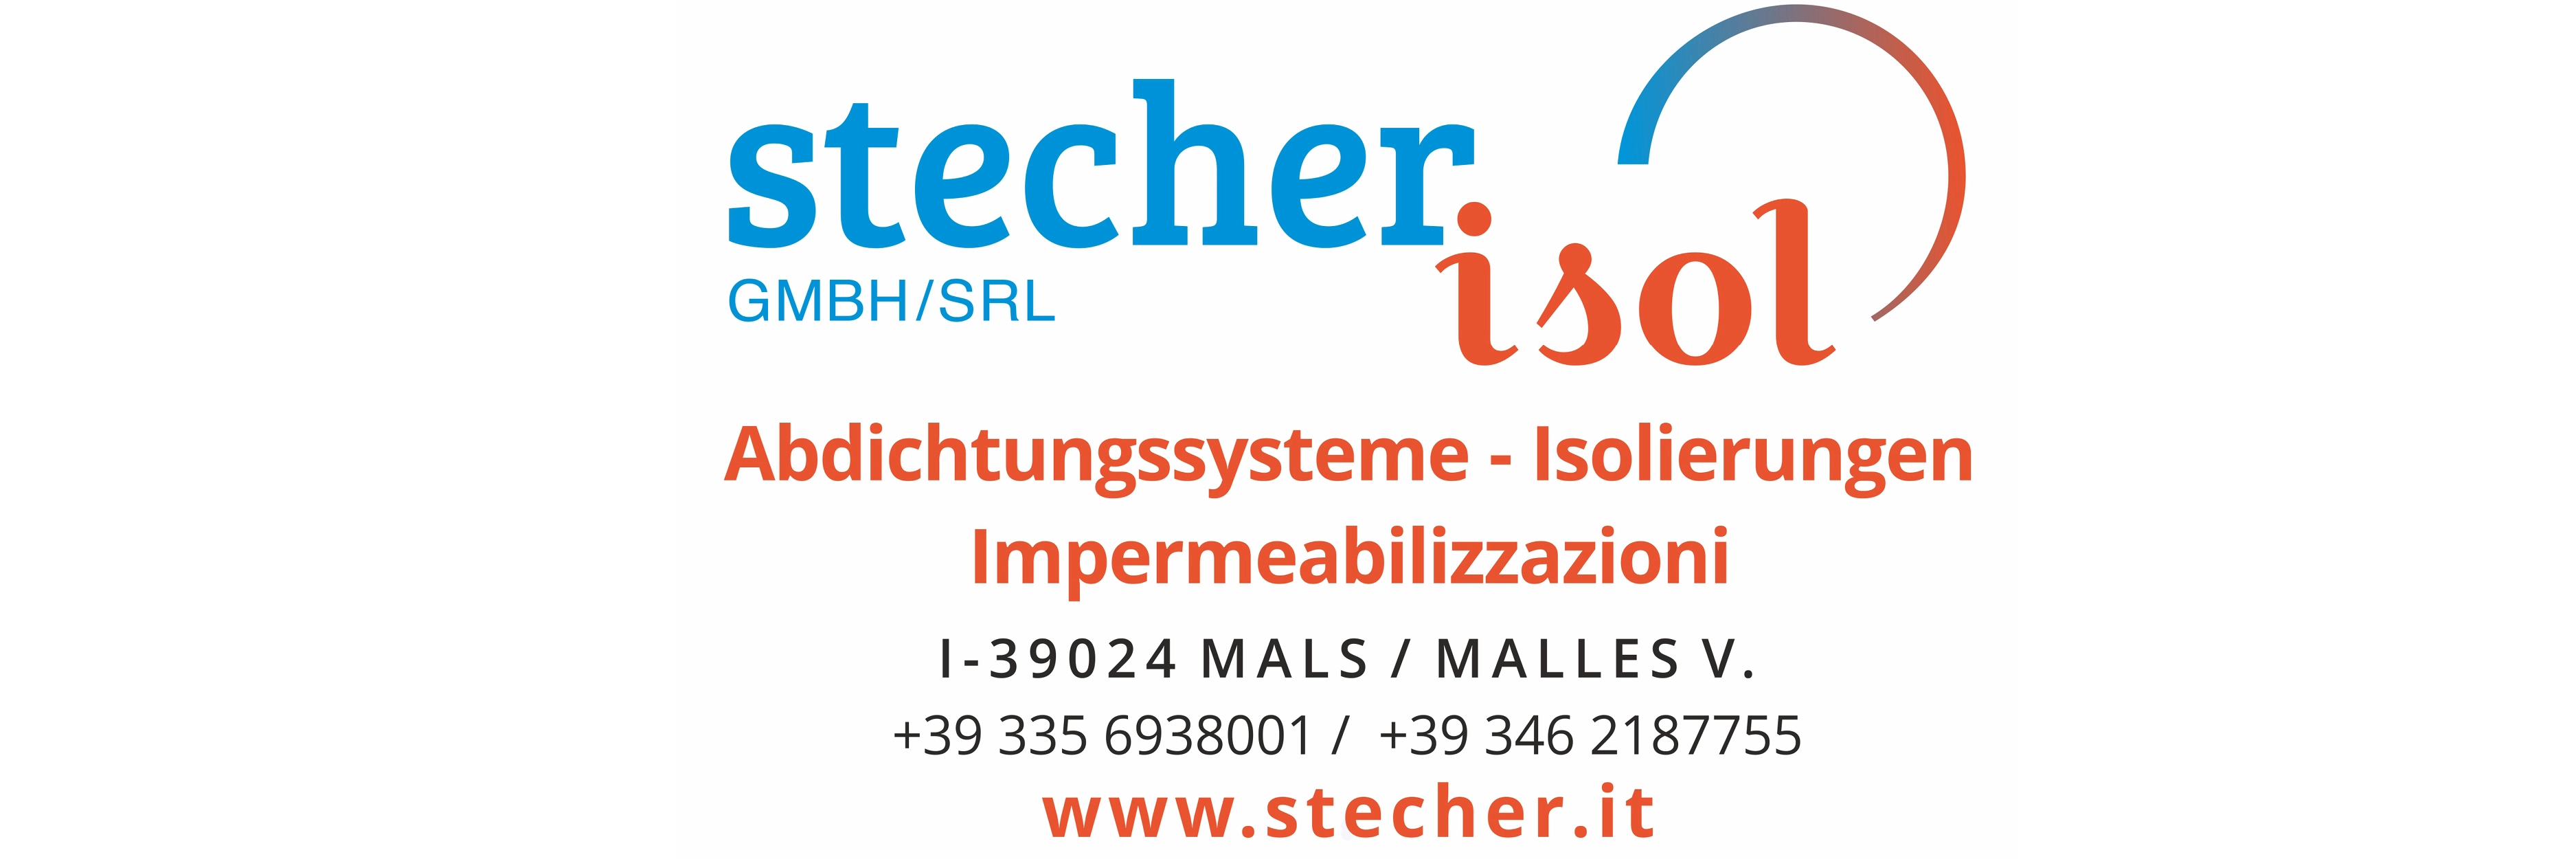 Stecher